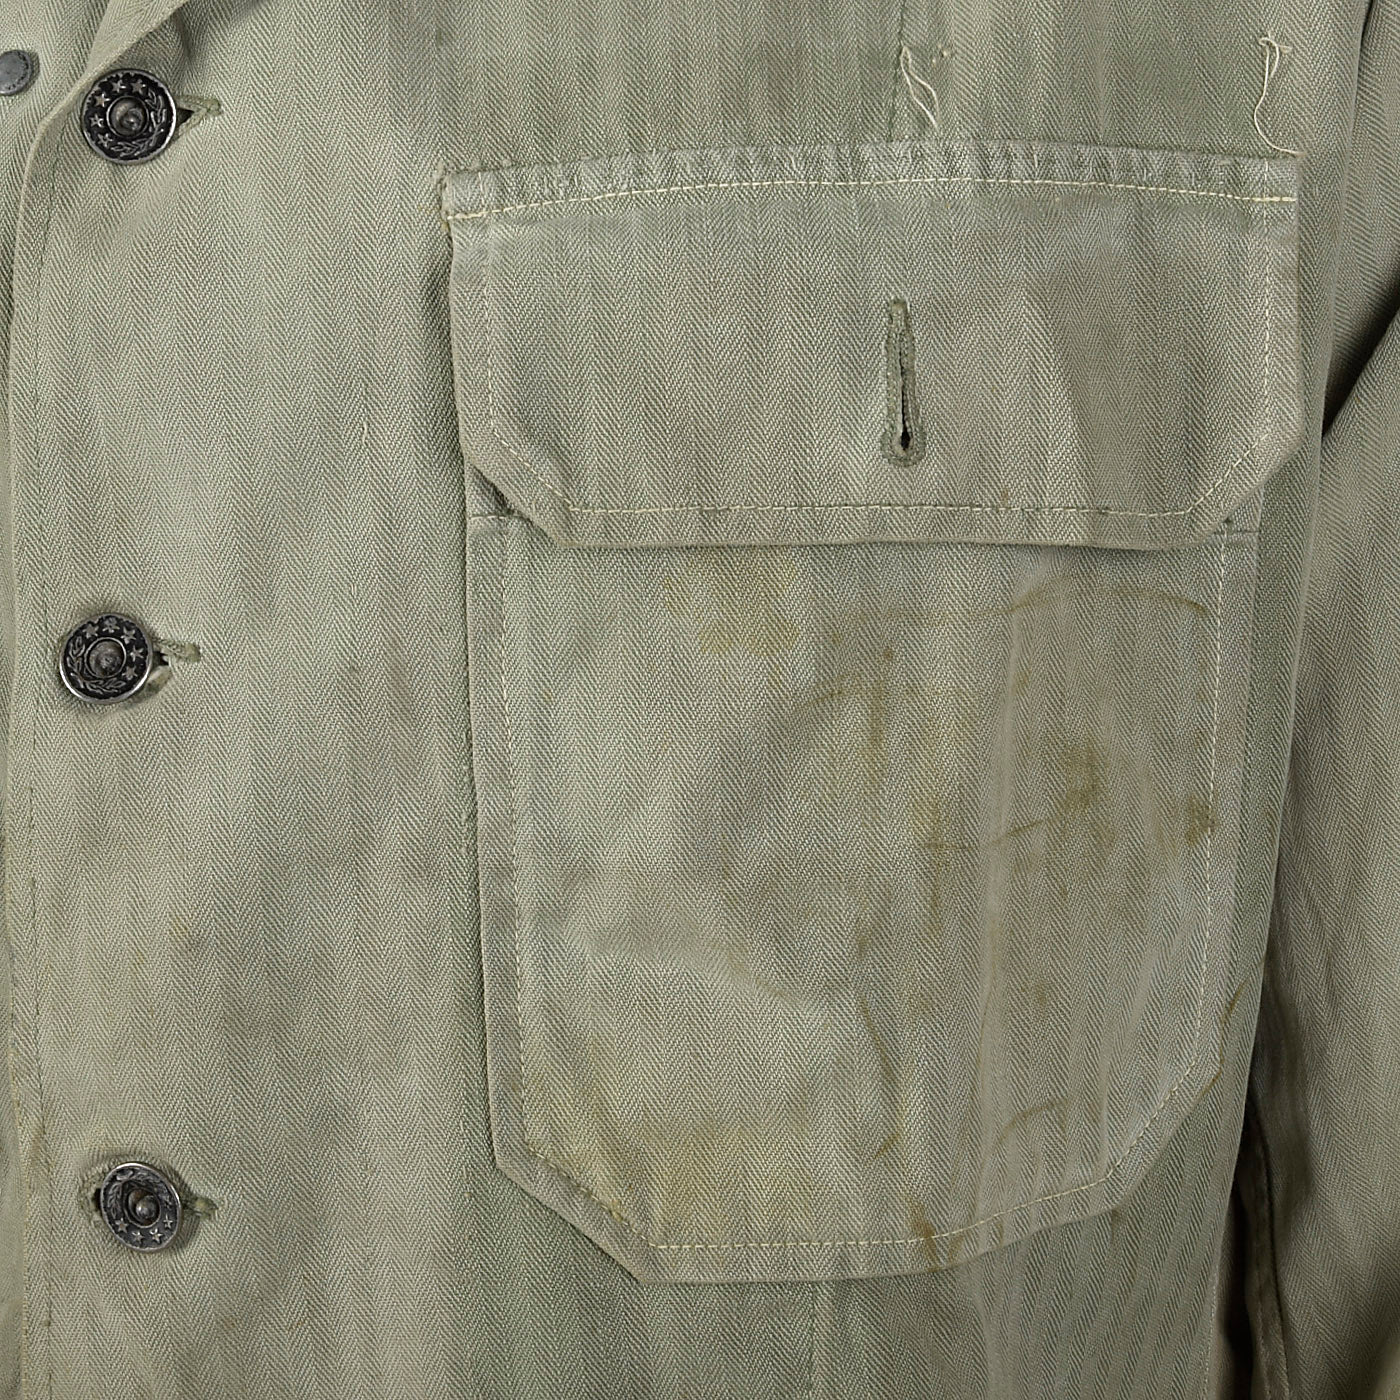 1940s WW2 US Army Shirt